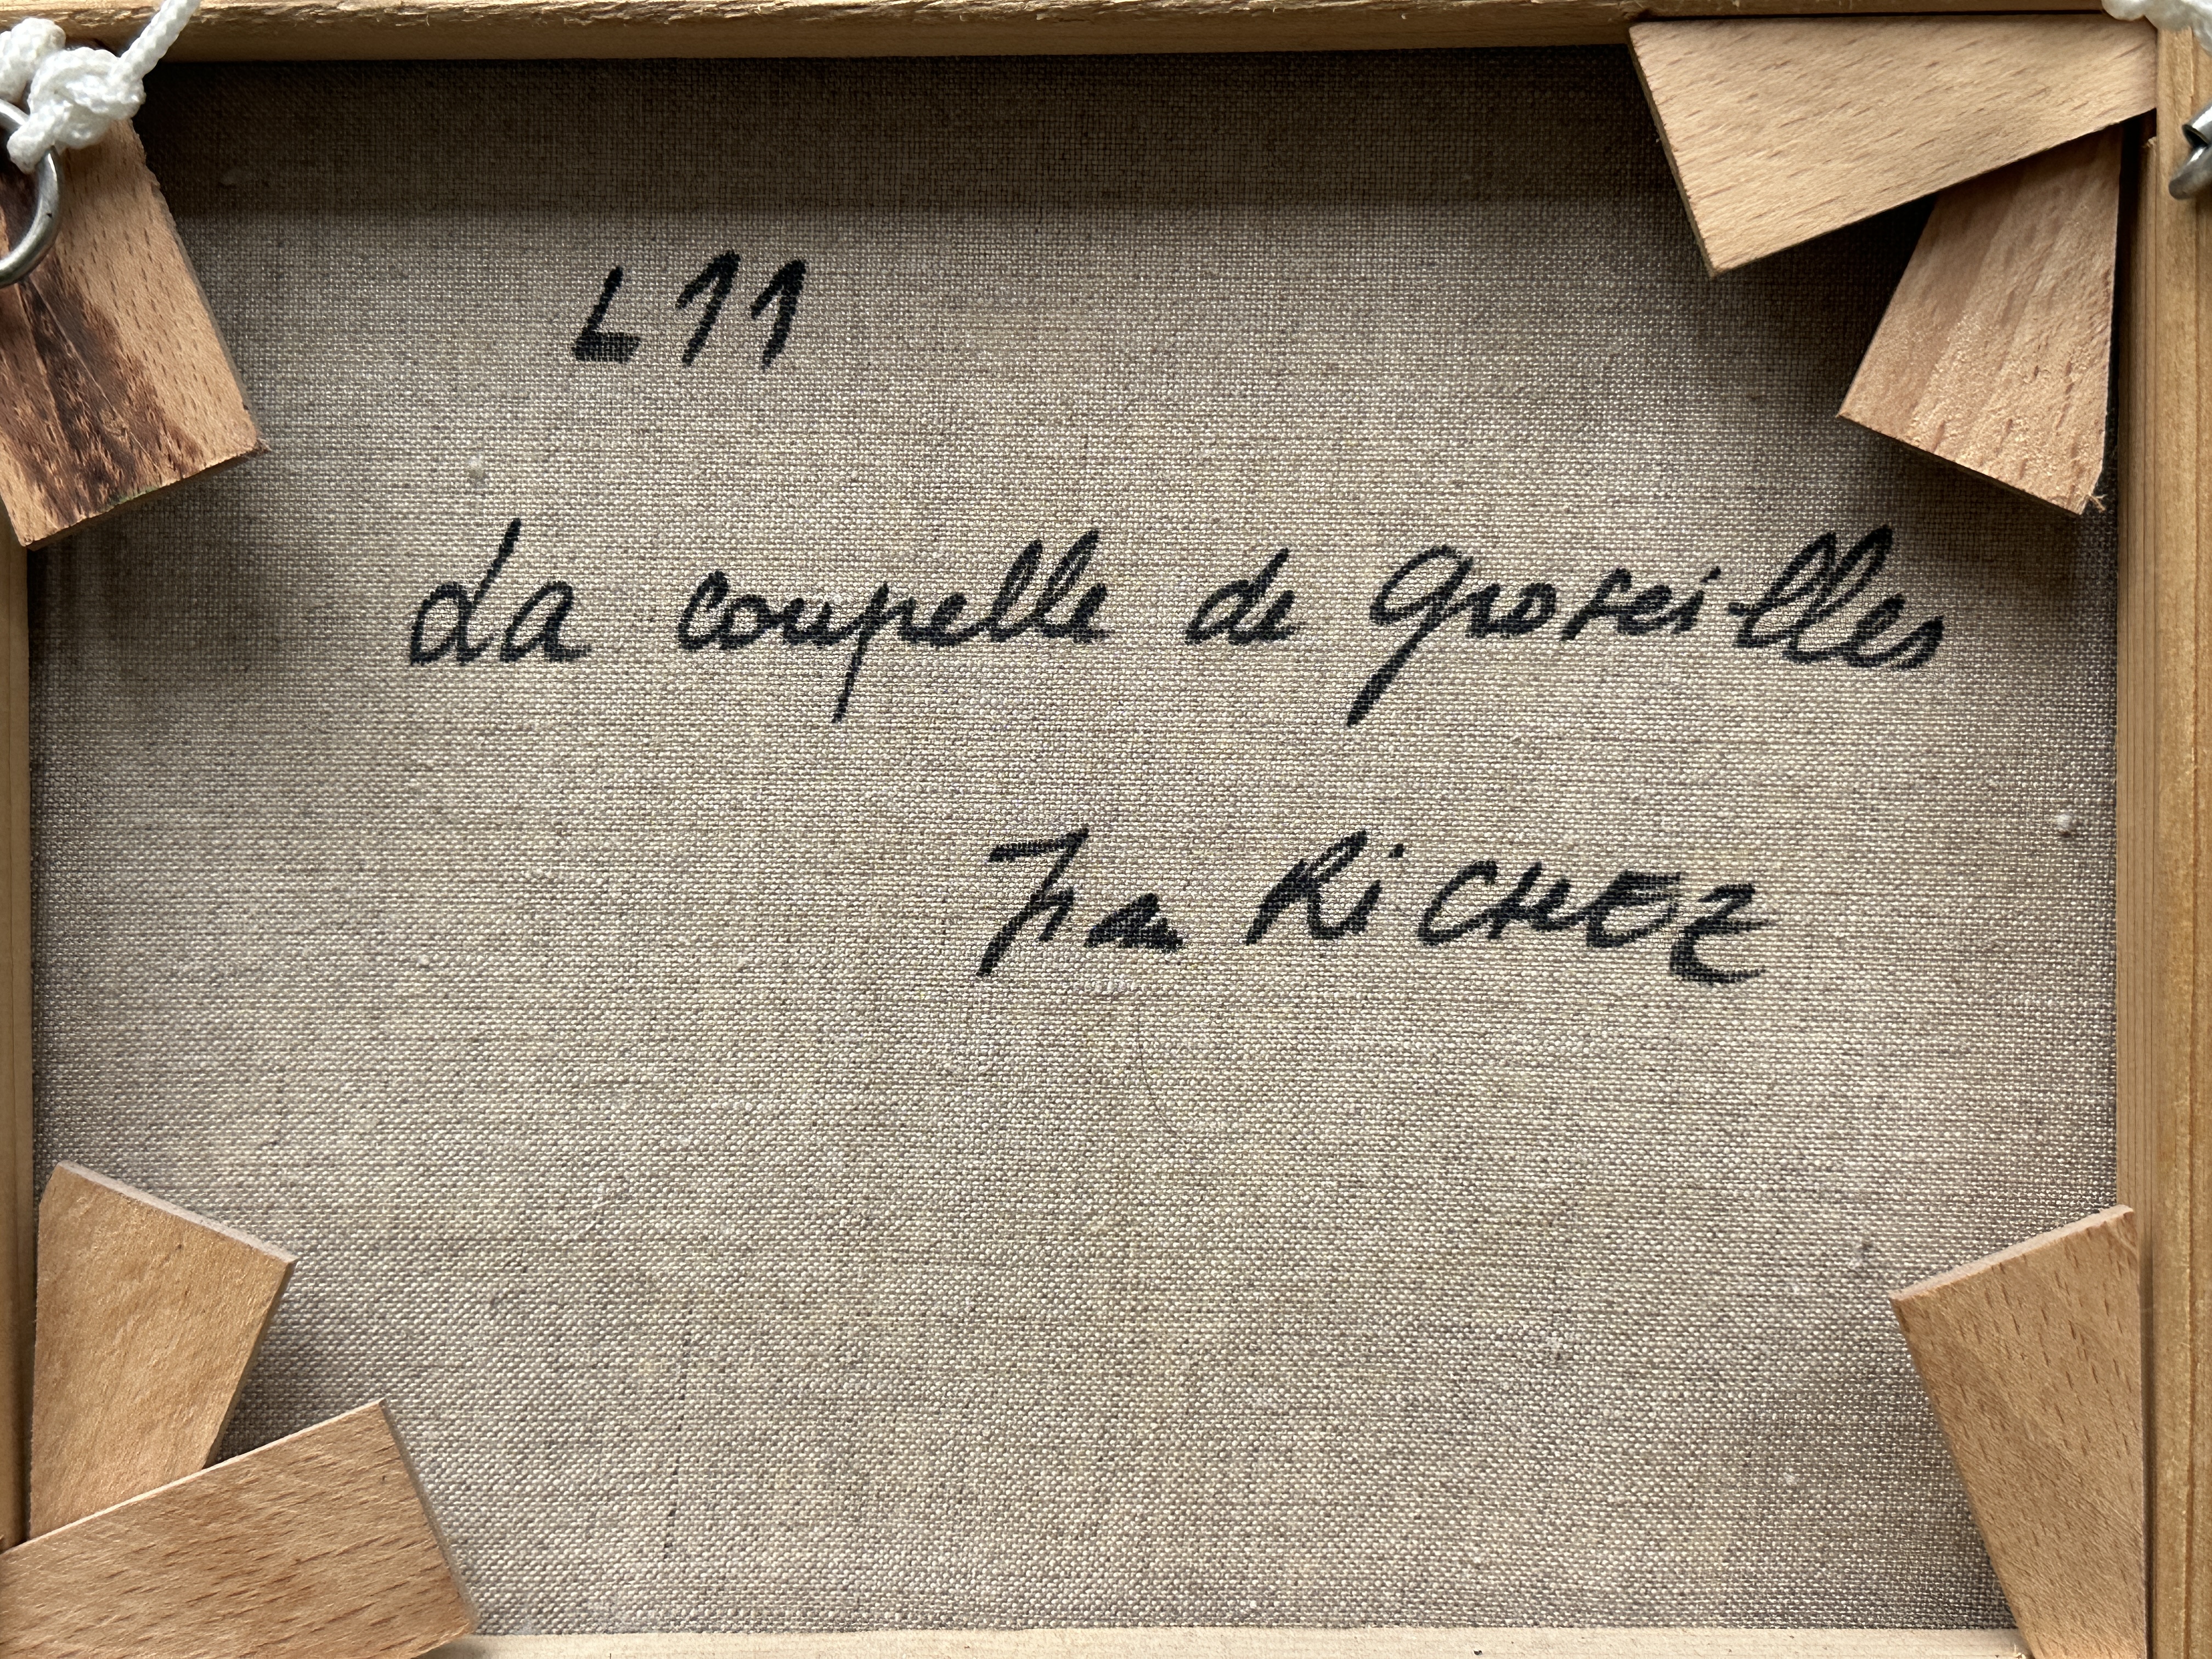 Jean Richez (b.1929) - "Da coupelle de groseilles" - Image 15 of 17